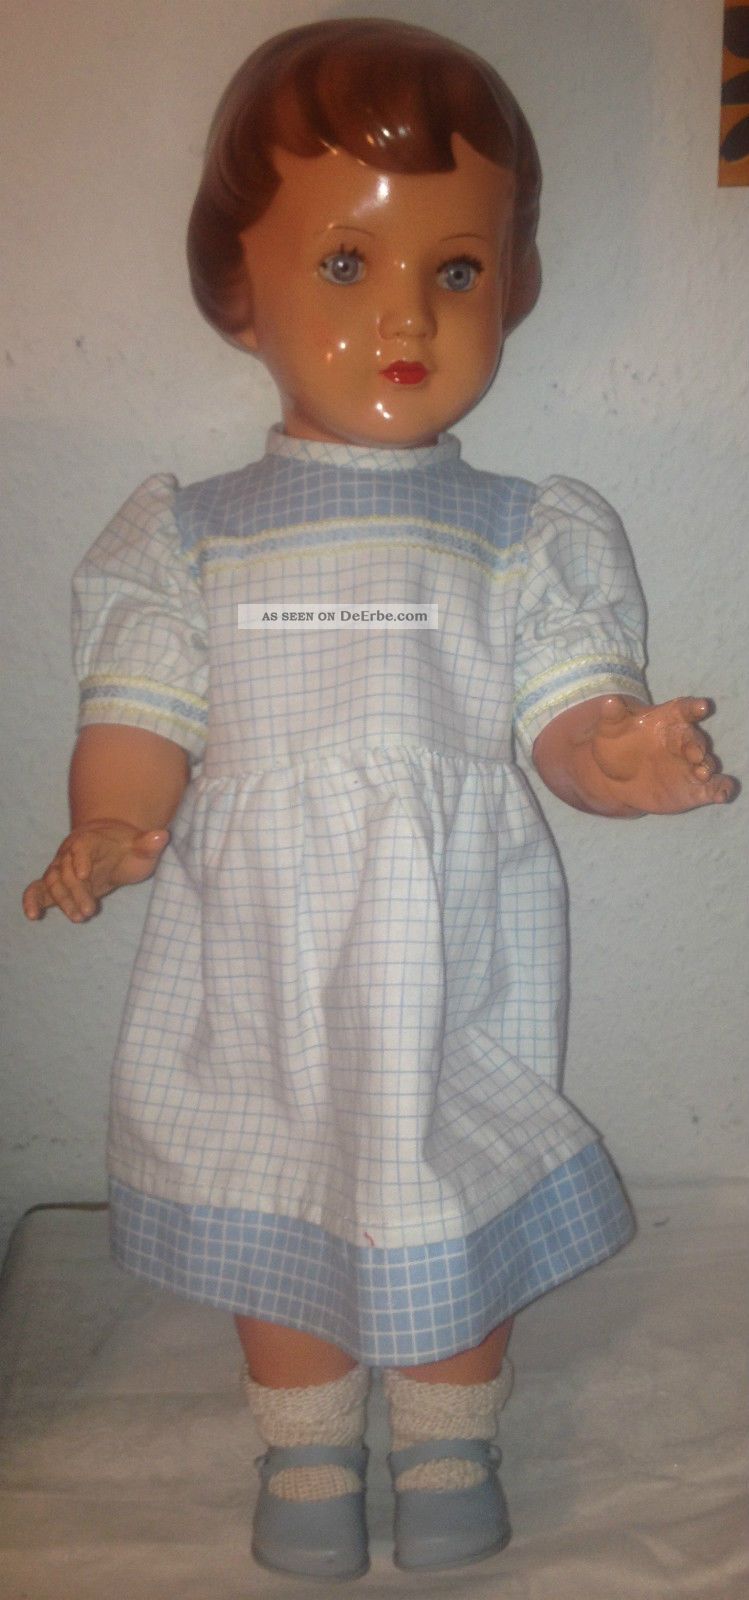 SchildkrÖt Celluloidpuppe Puppe M Blau - Weiß Kariertem Kleidchen - Ca.  53 Cm Schildkröt Bild